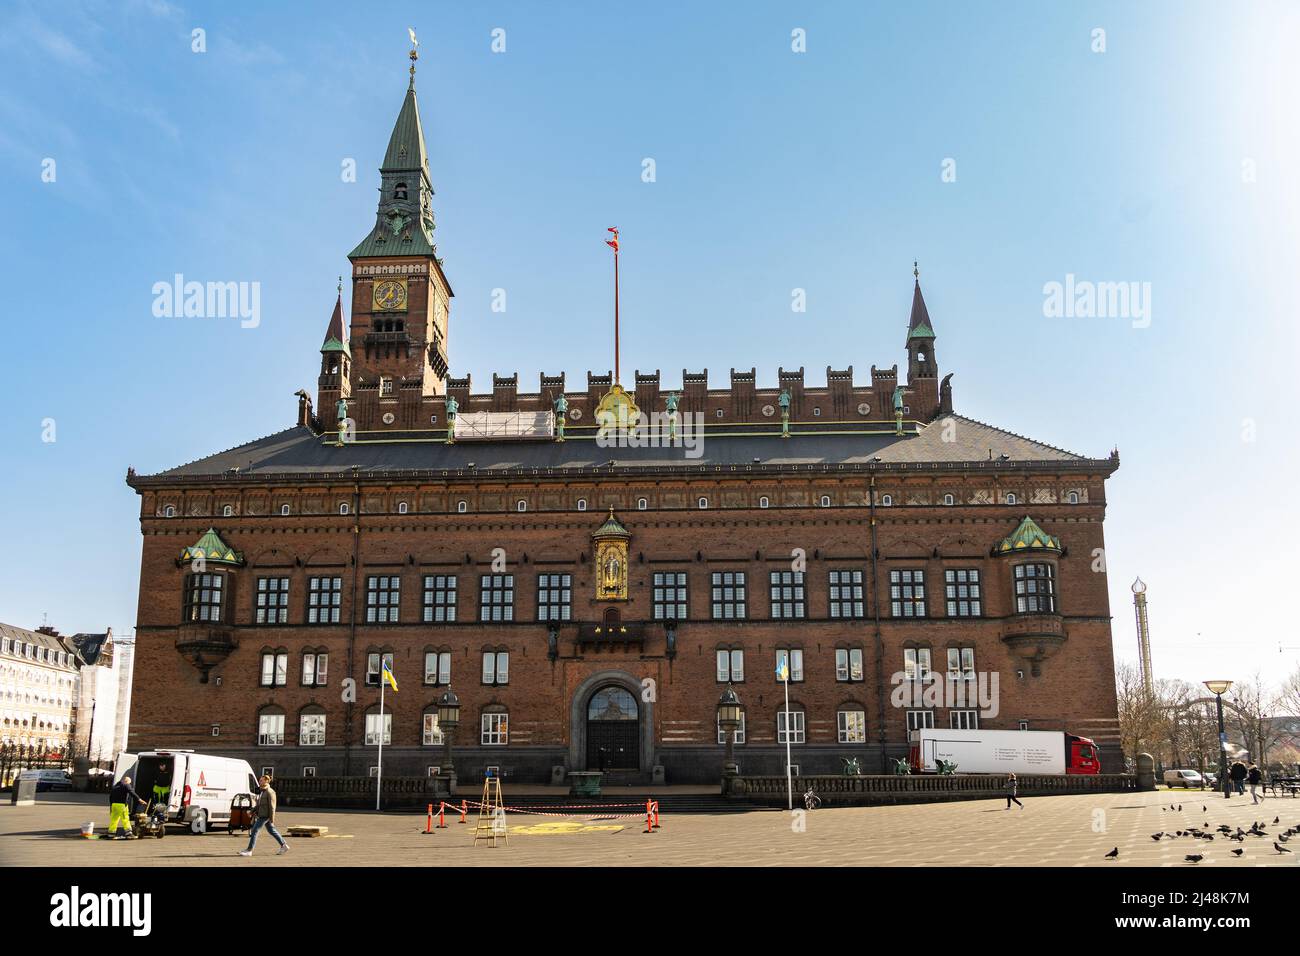 Das Kopenhagener Rathaus im Neo-Renaissance-Stil, das auf der zentralen Rådhusplads, dem Rathausplatz, steht. Kopenhagen, Dänemark, Europa Stockfoto